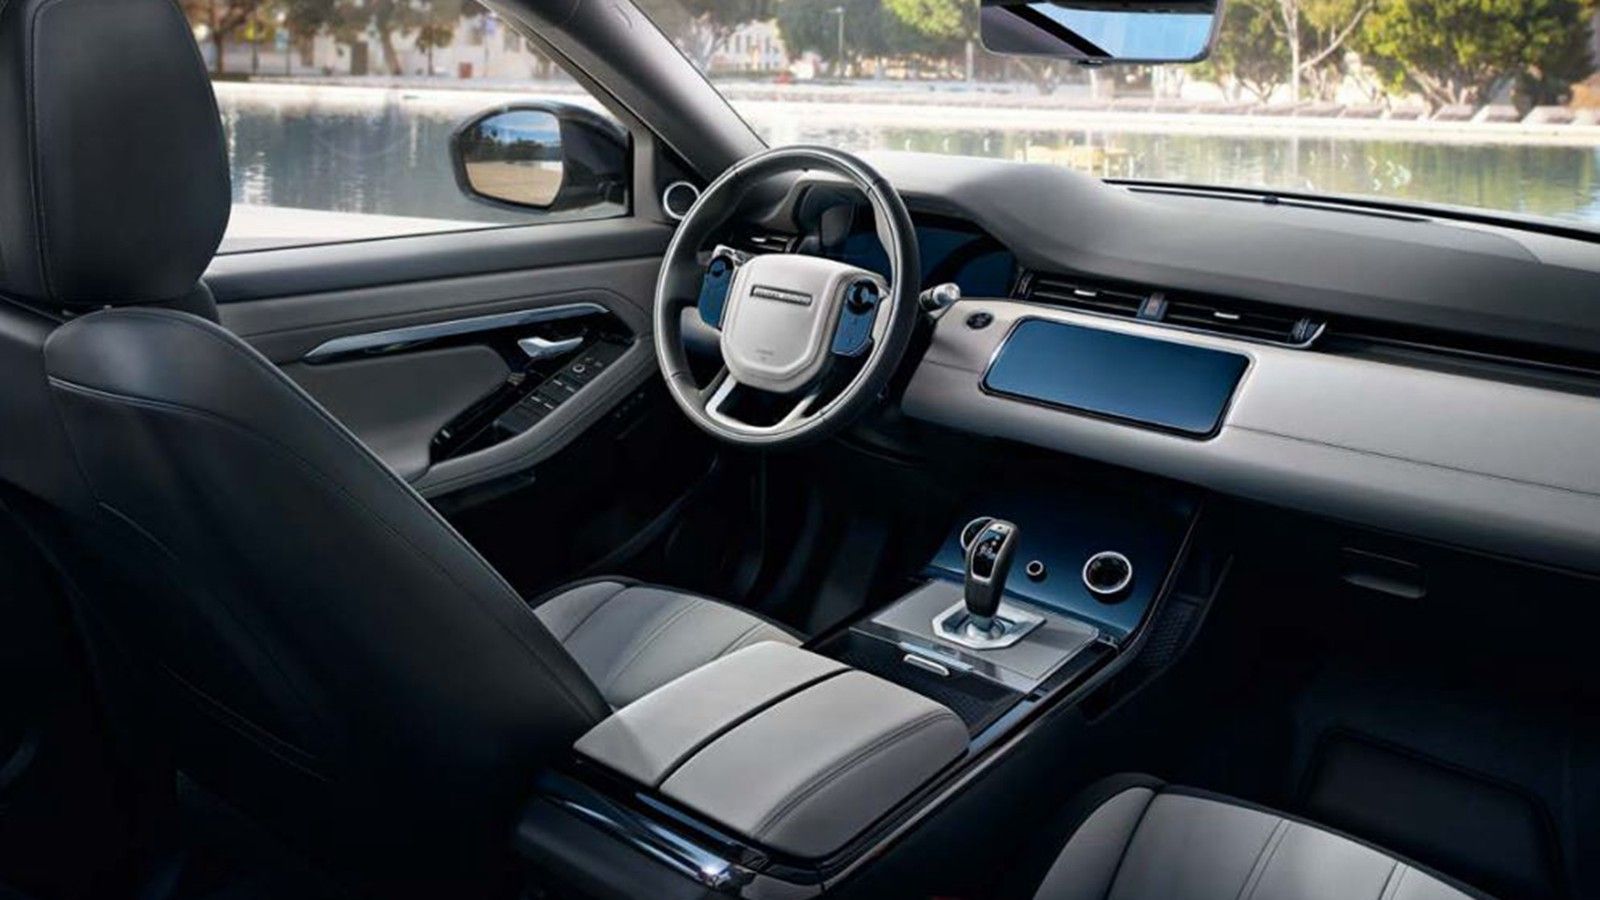 2020 Land Rover Range Rover Evoque Interior 001